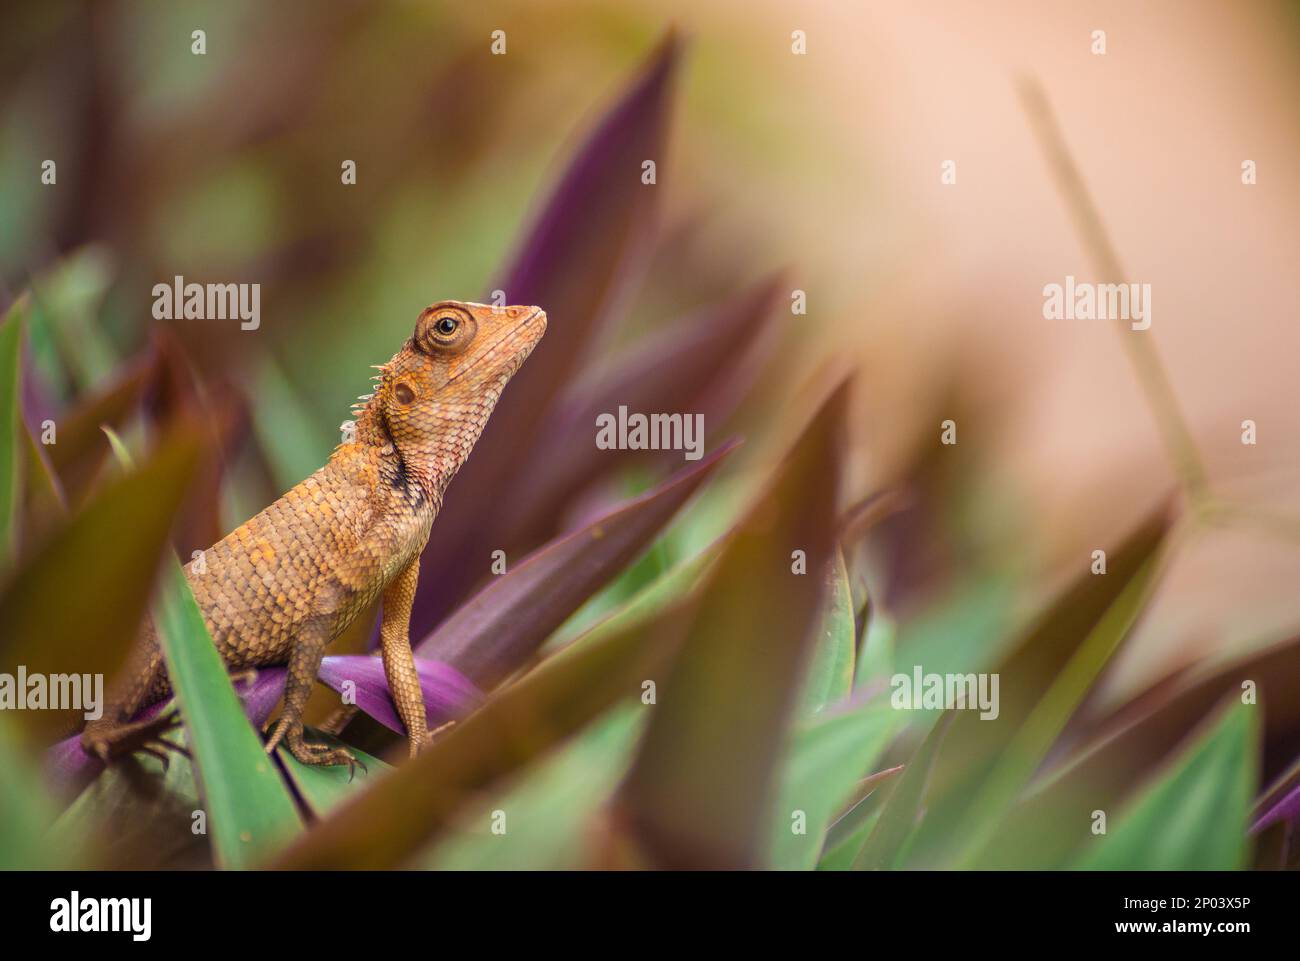 Baby Yellow Iguana sitting amongst green and purple grass Stock Photo